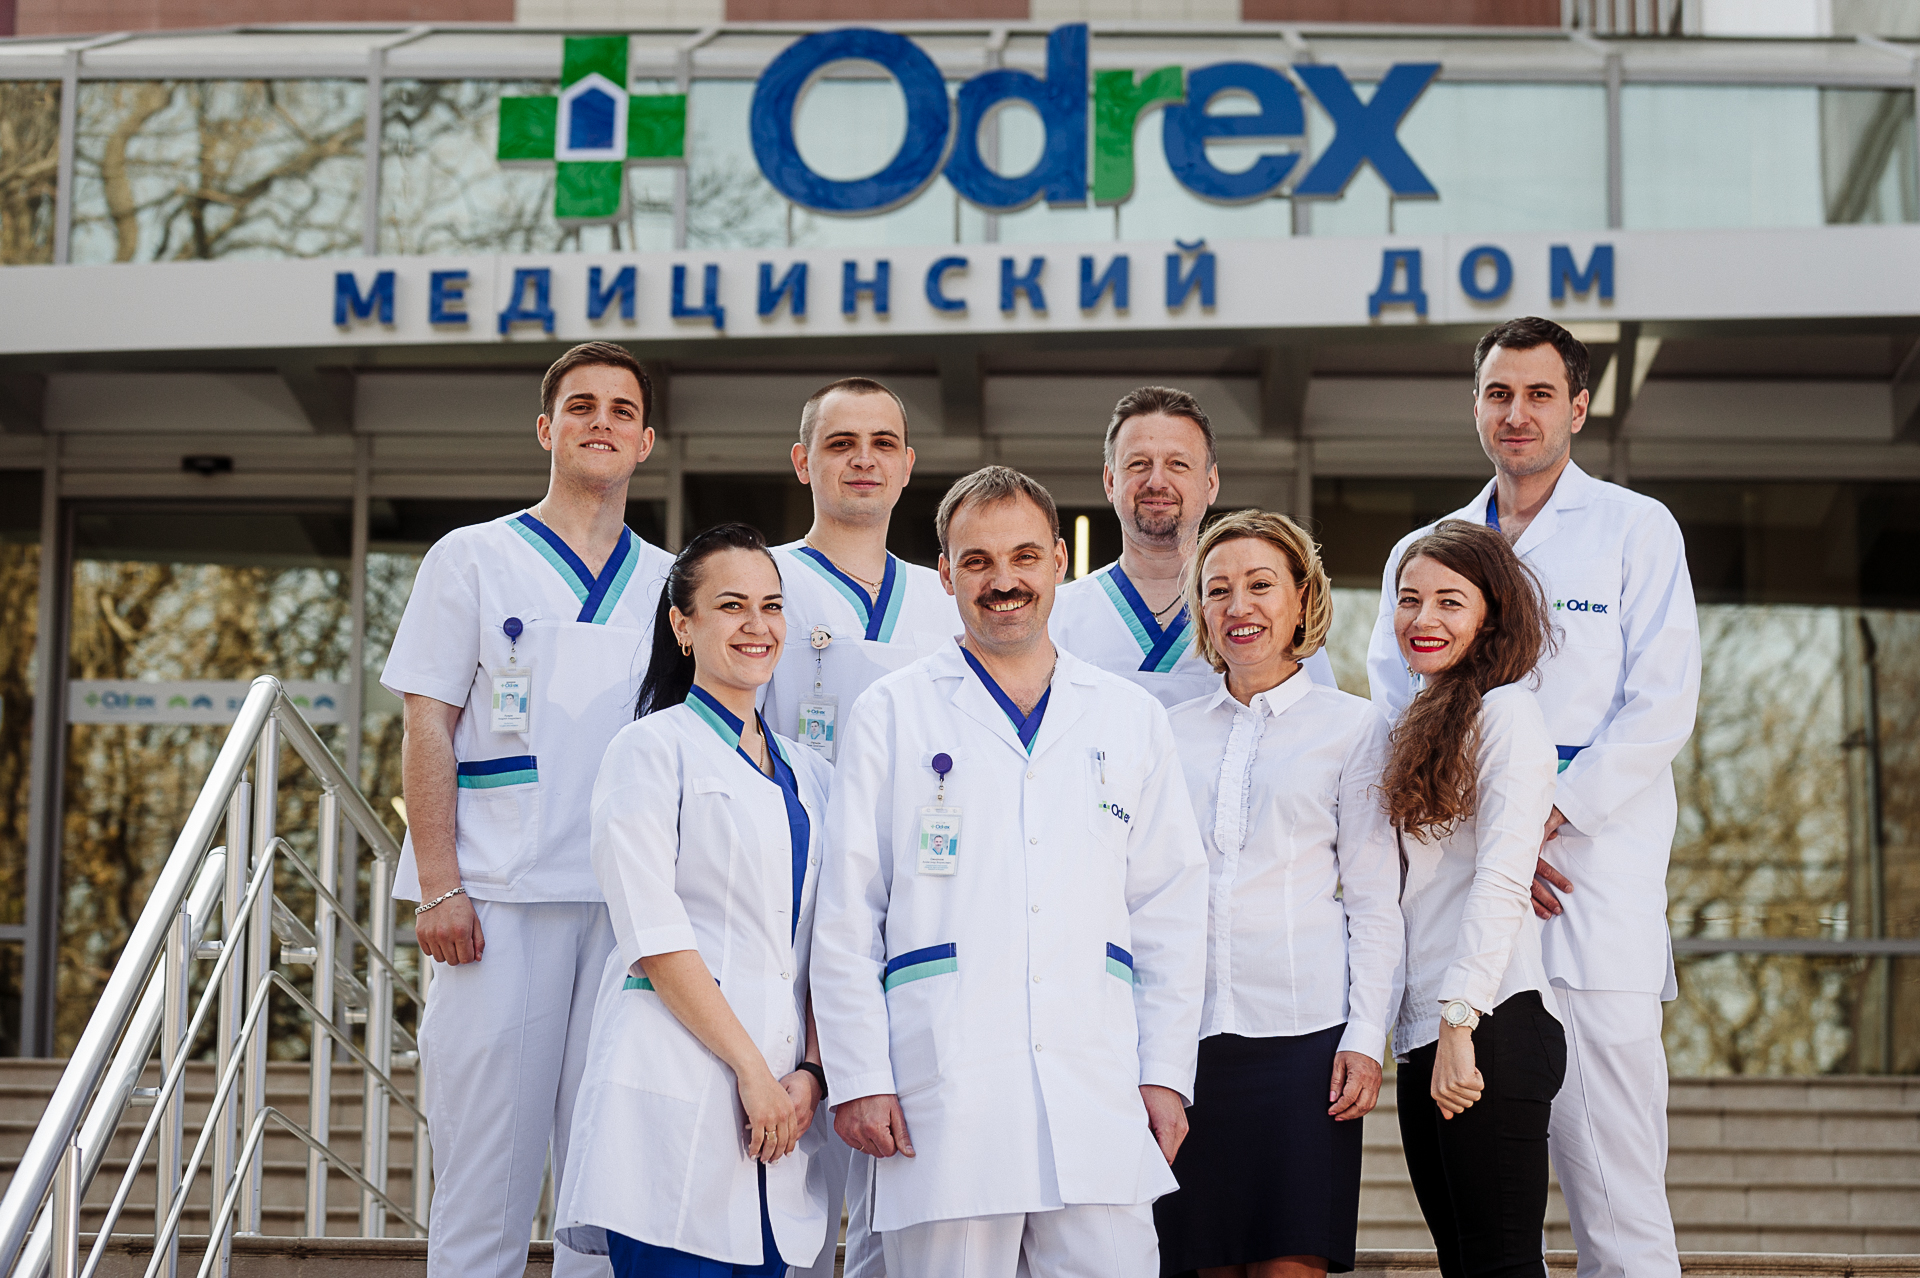 Одесский медицинский